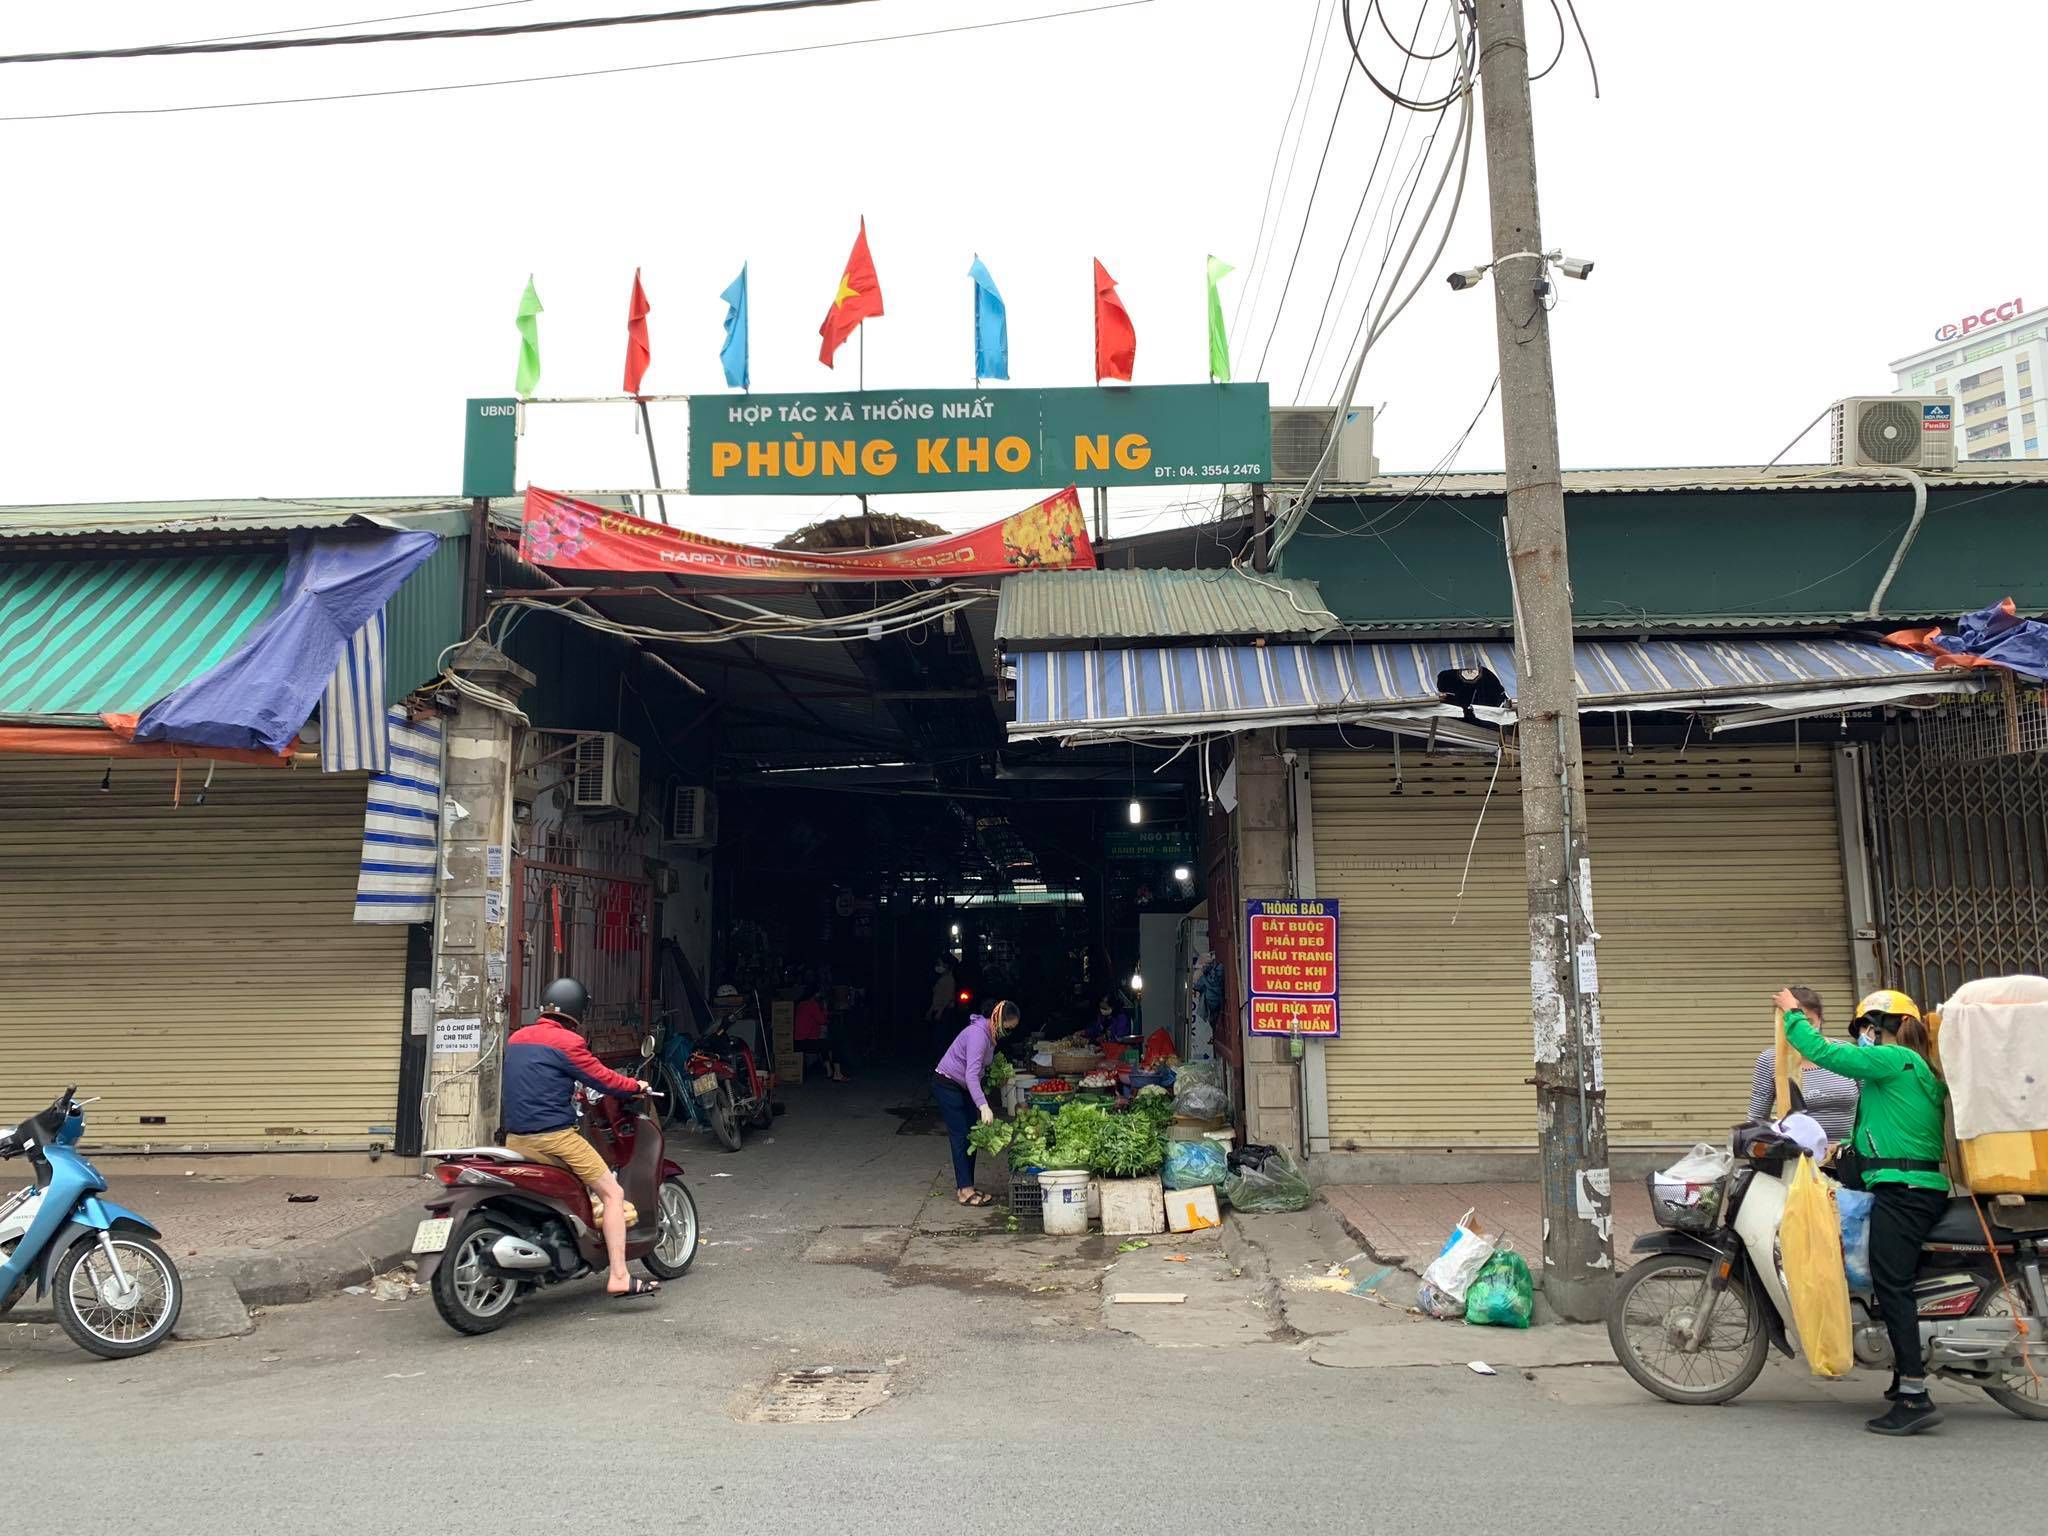 Ghi nhận của phóng viên chiều 15 giờ 30, ngày 4/1, tại chợ Phùng Khoang (Hà Nội), hoạt động buôn bán ở đây vẫn diễn ra bình thường. Lượng khách sụt giảm so với những ngày trước, khung cảnh chợ vắng lặng hơn mọi ngày.